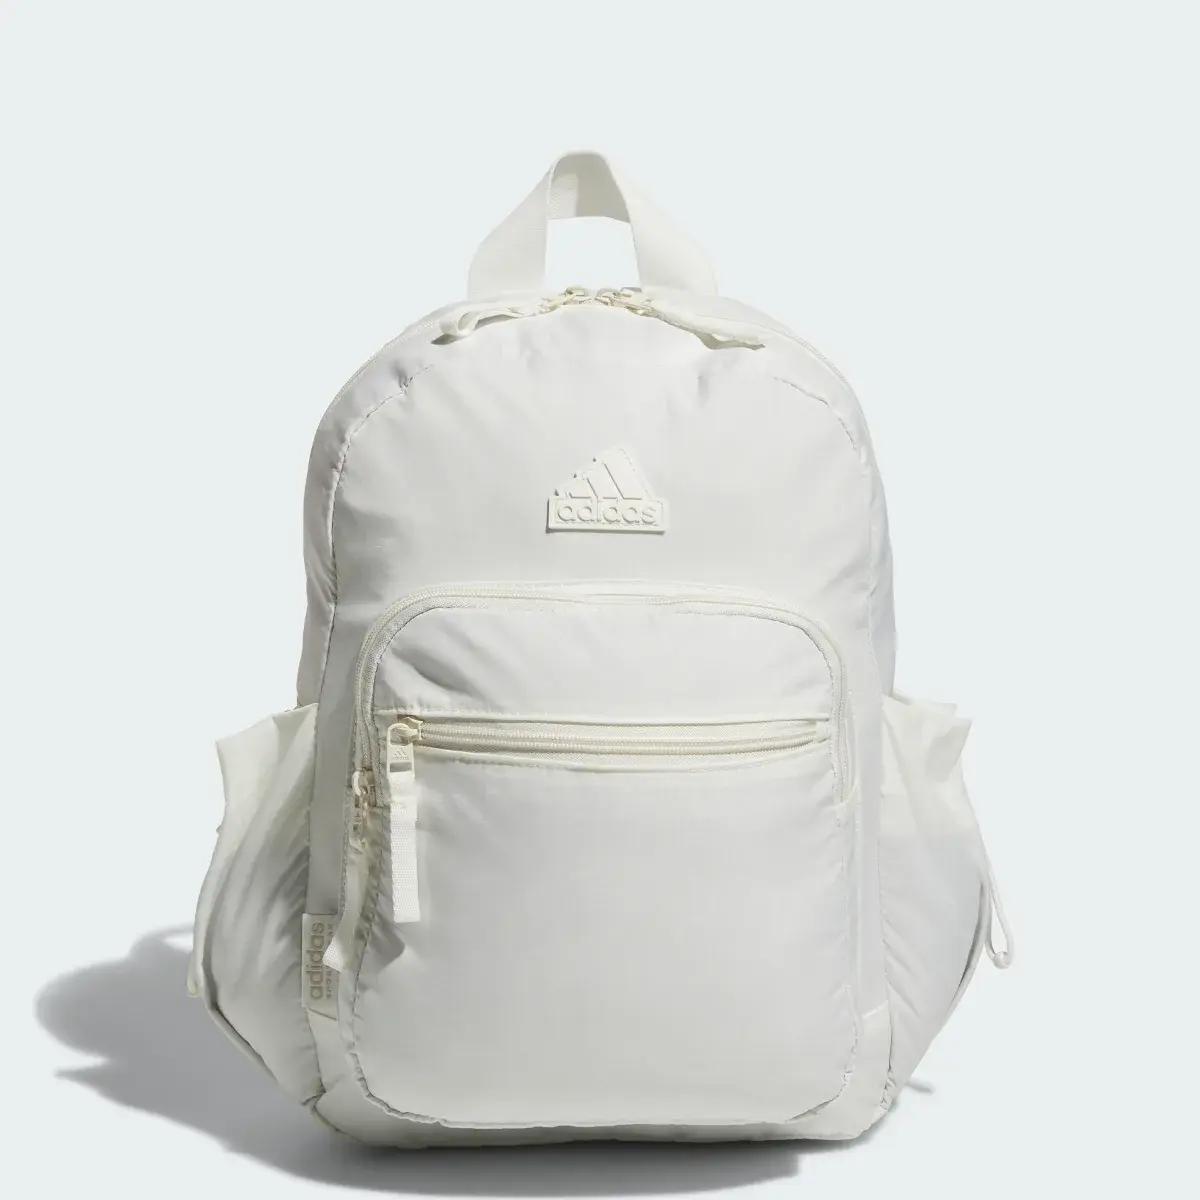 Adidas Weekender Backpack. 1